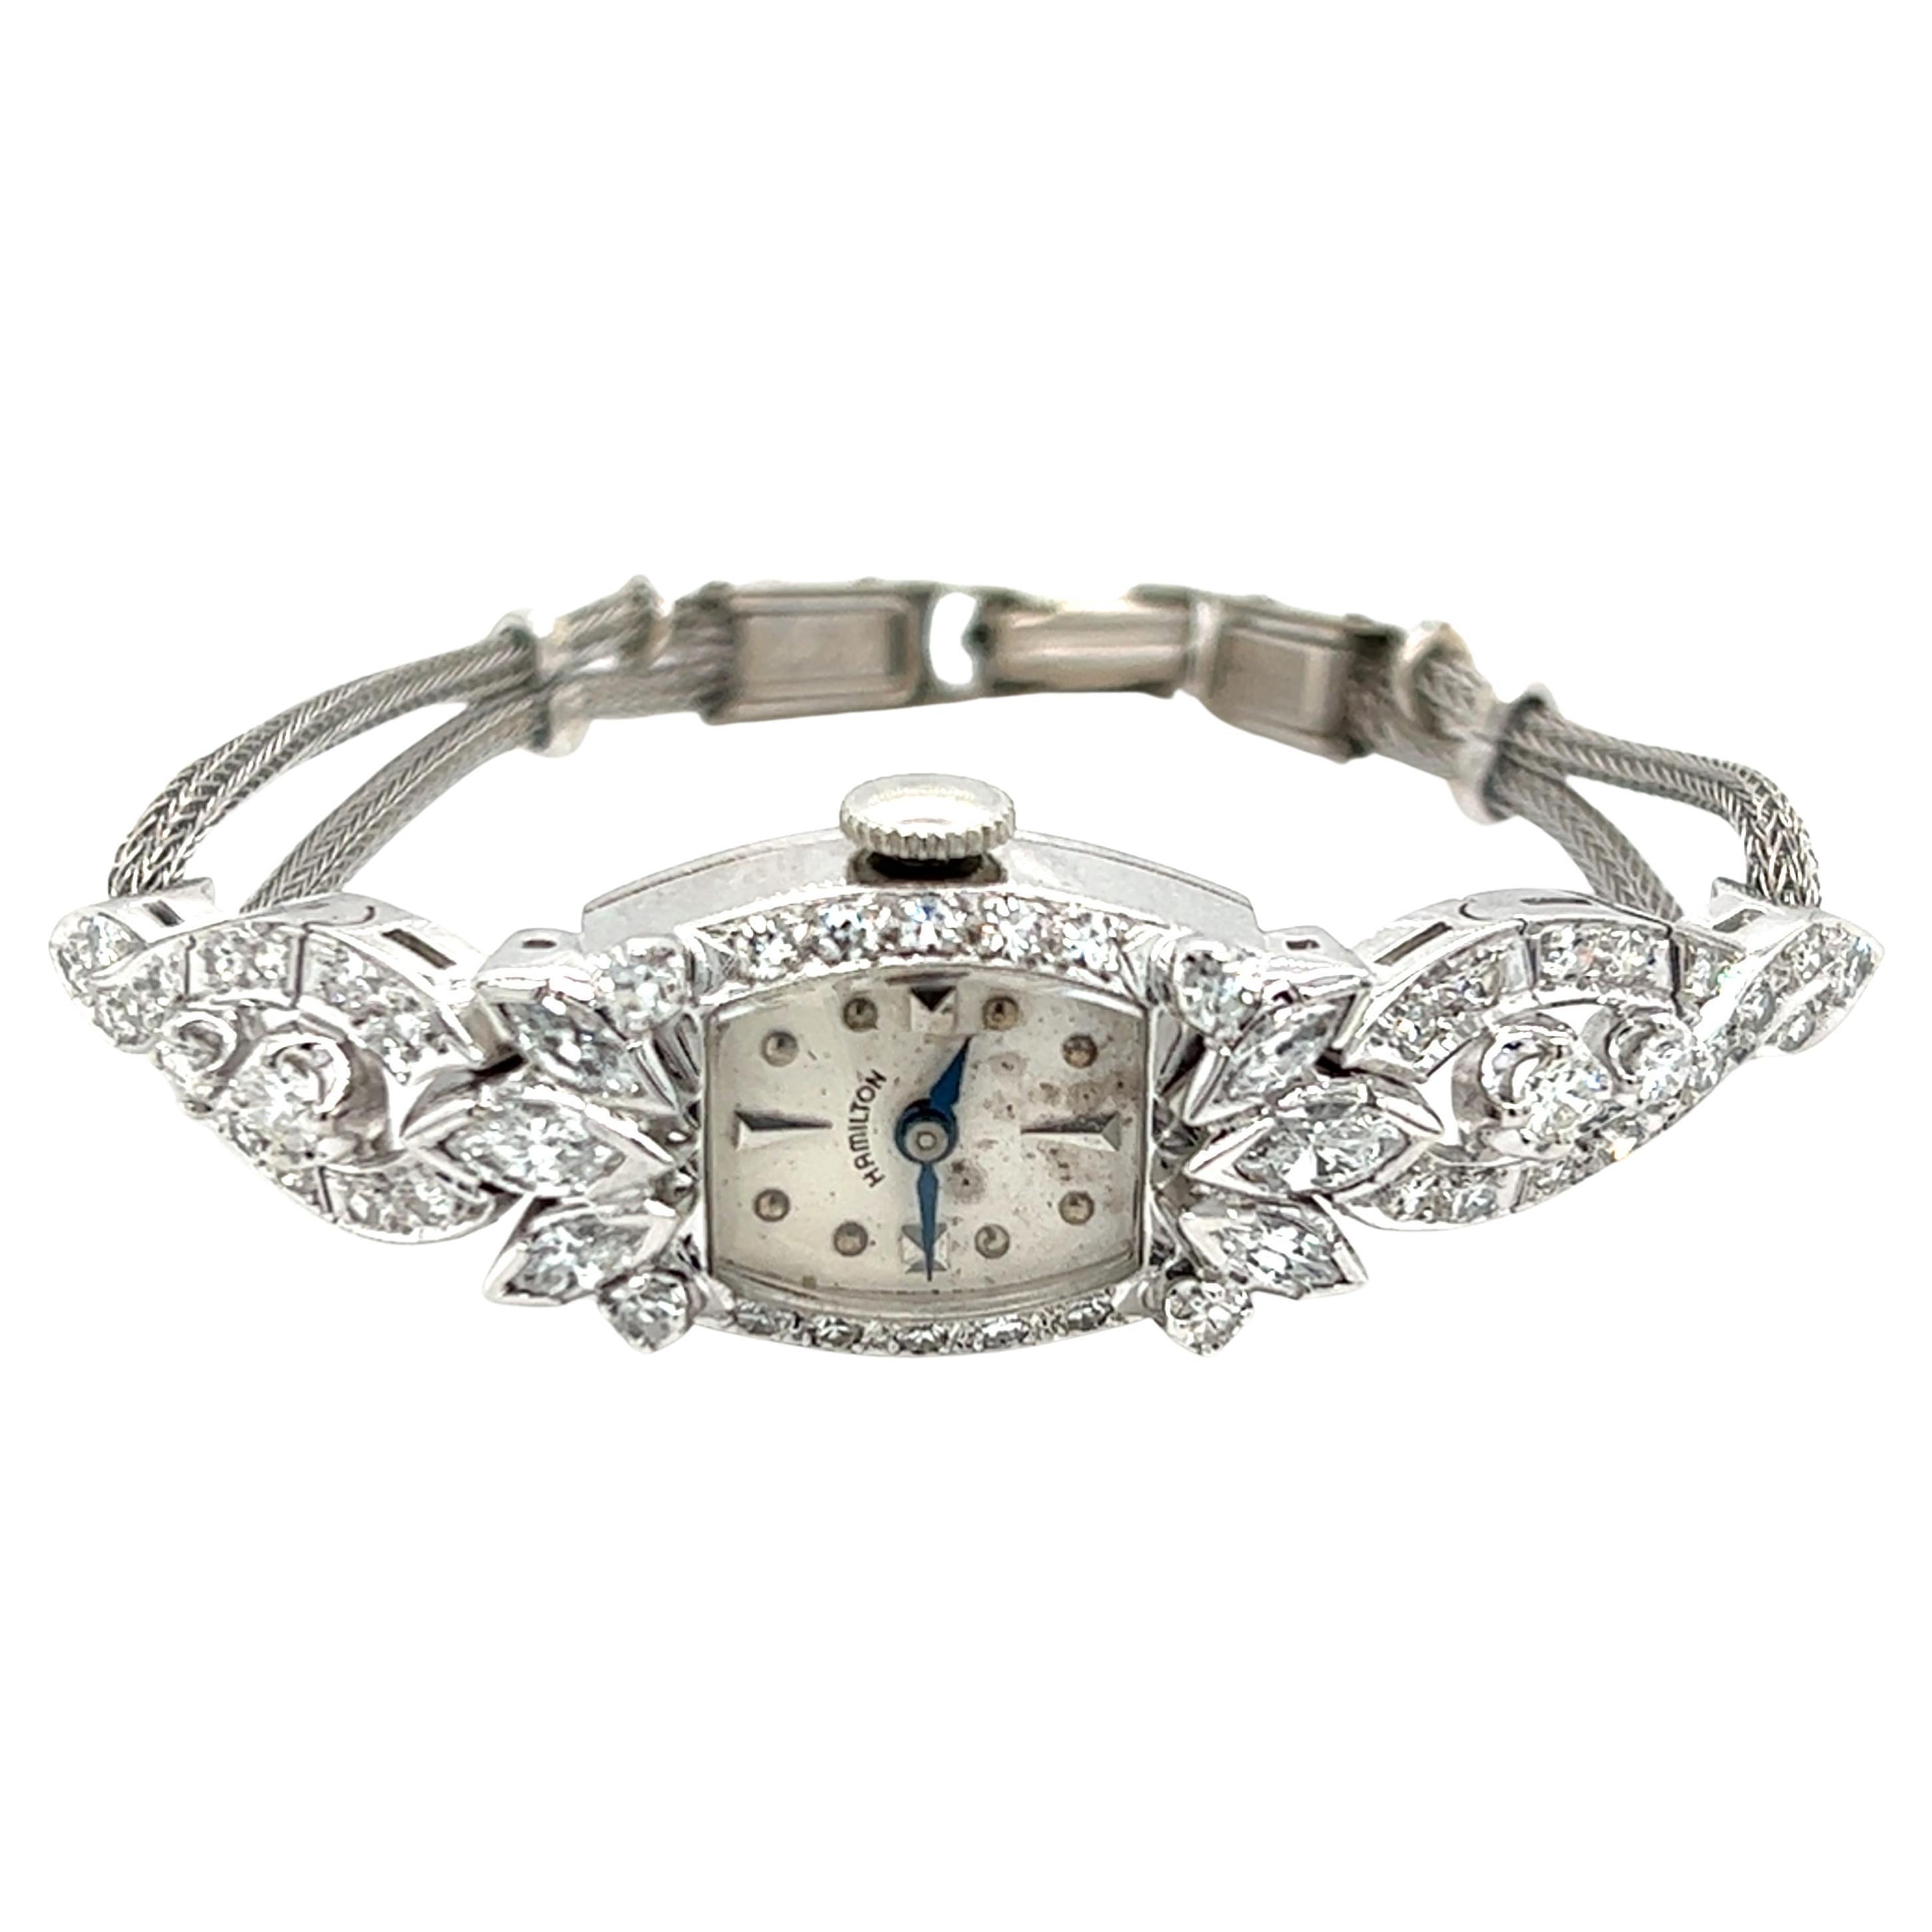 Hamilton Ladies White Gold Diamond Bracelet Watch, Circa 1960